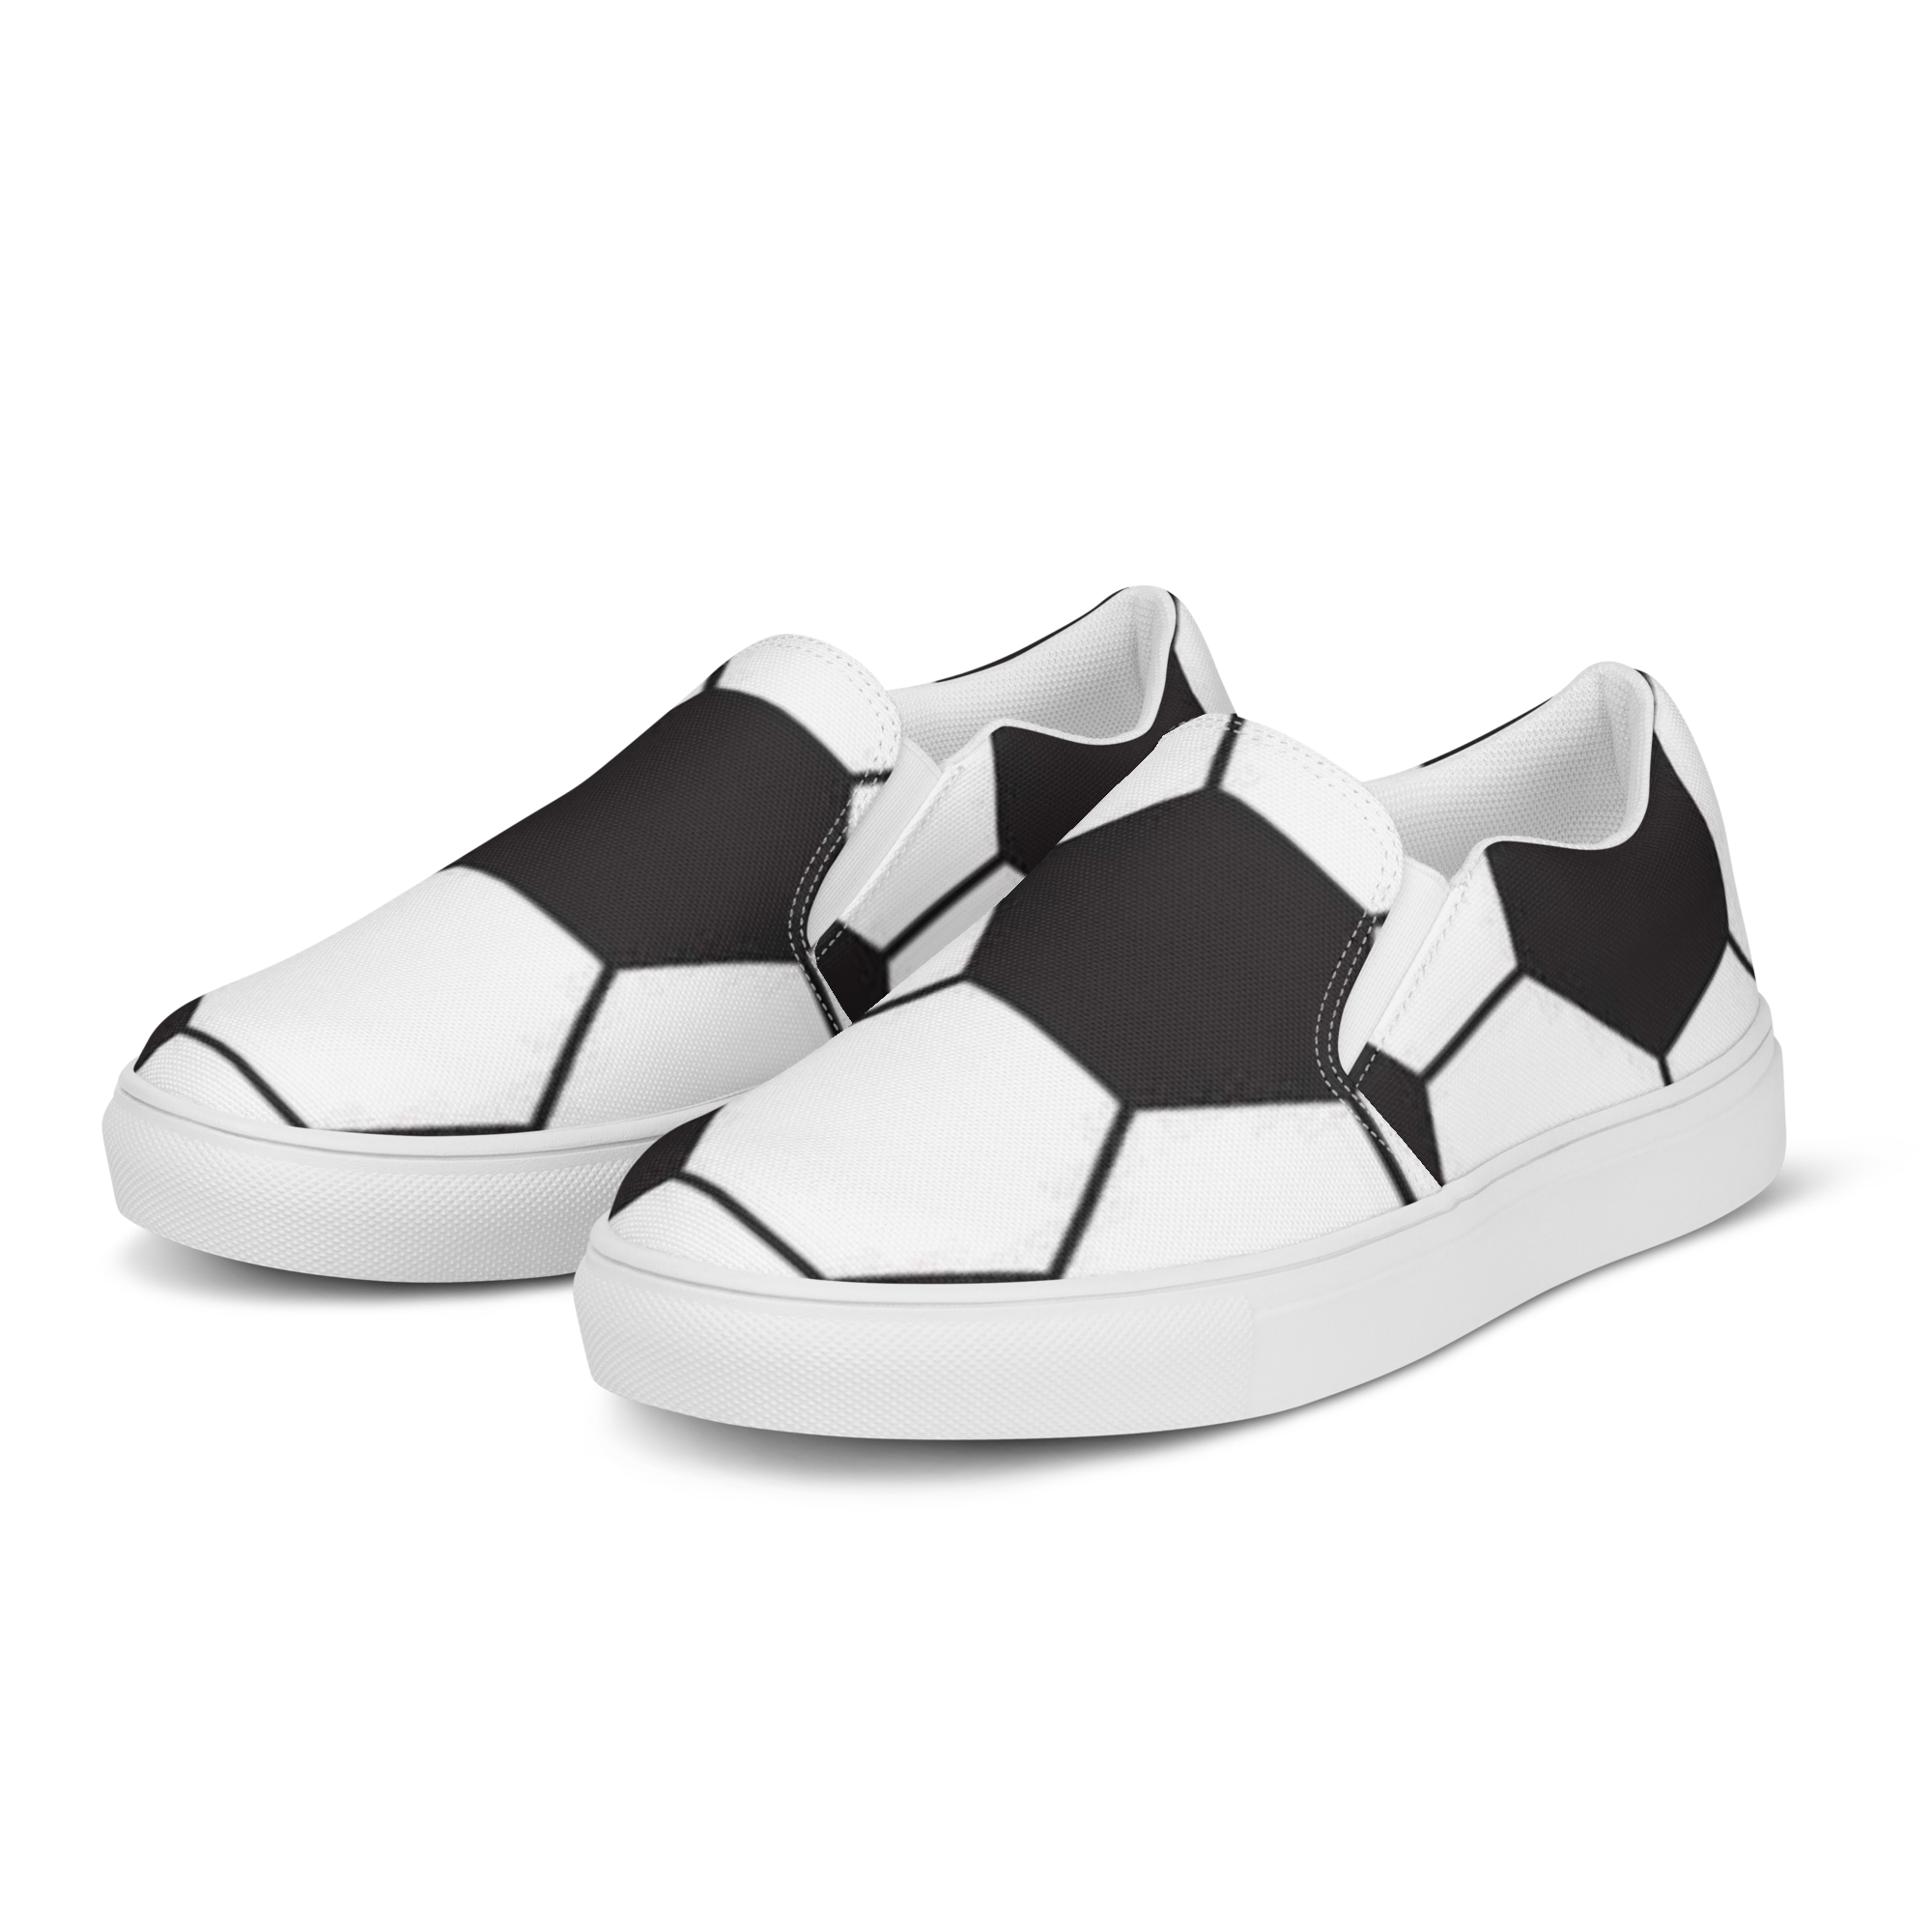 Soccer Ball Men’s slip-on canvas shoes